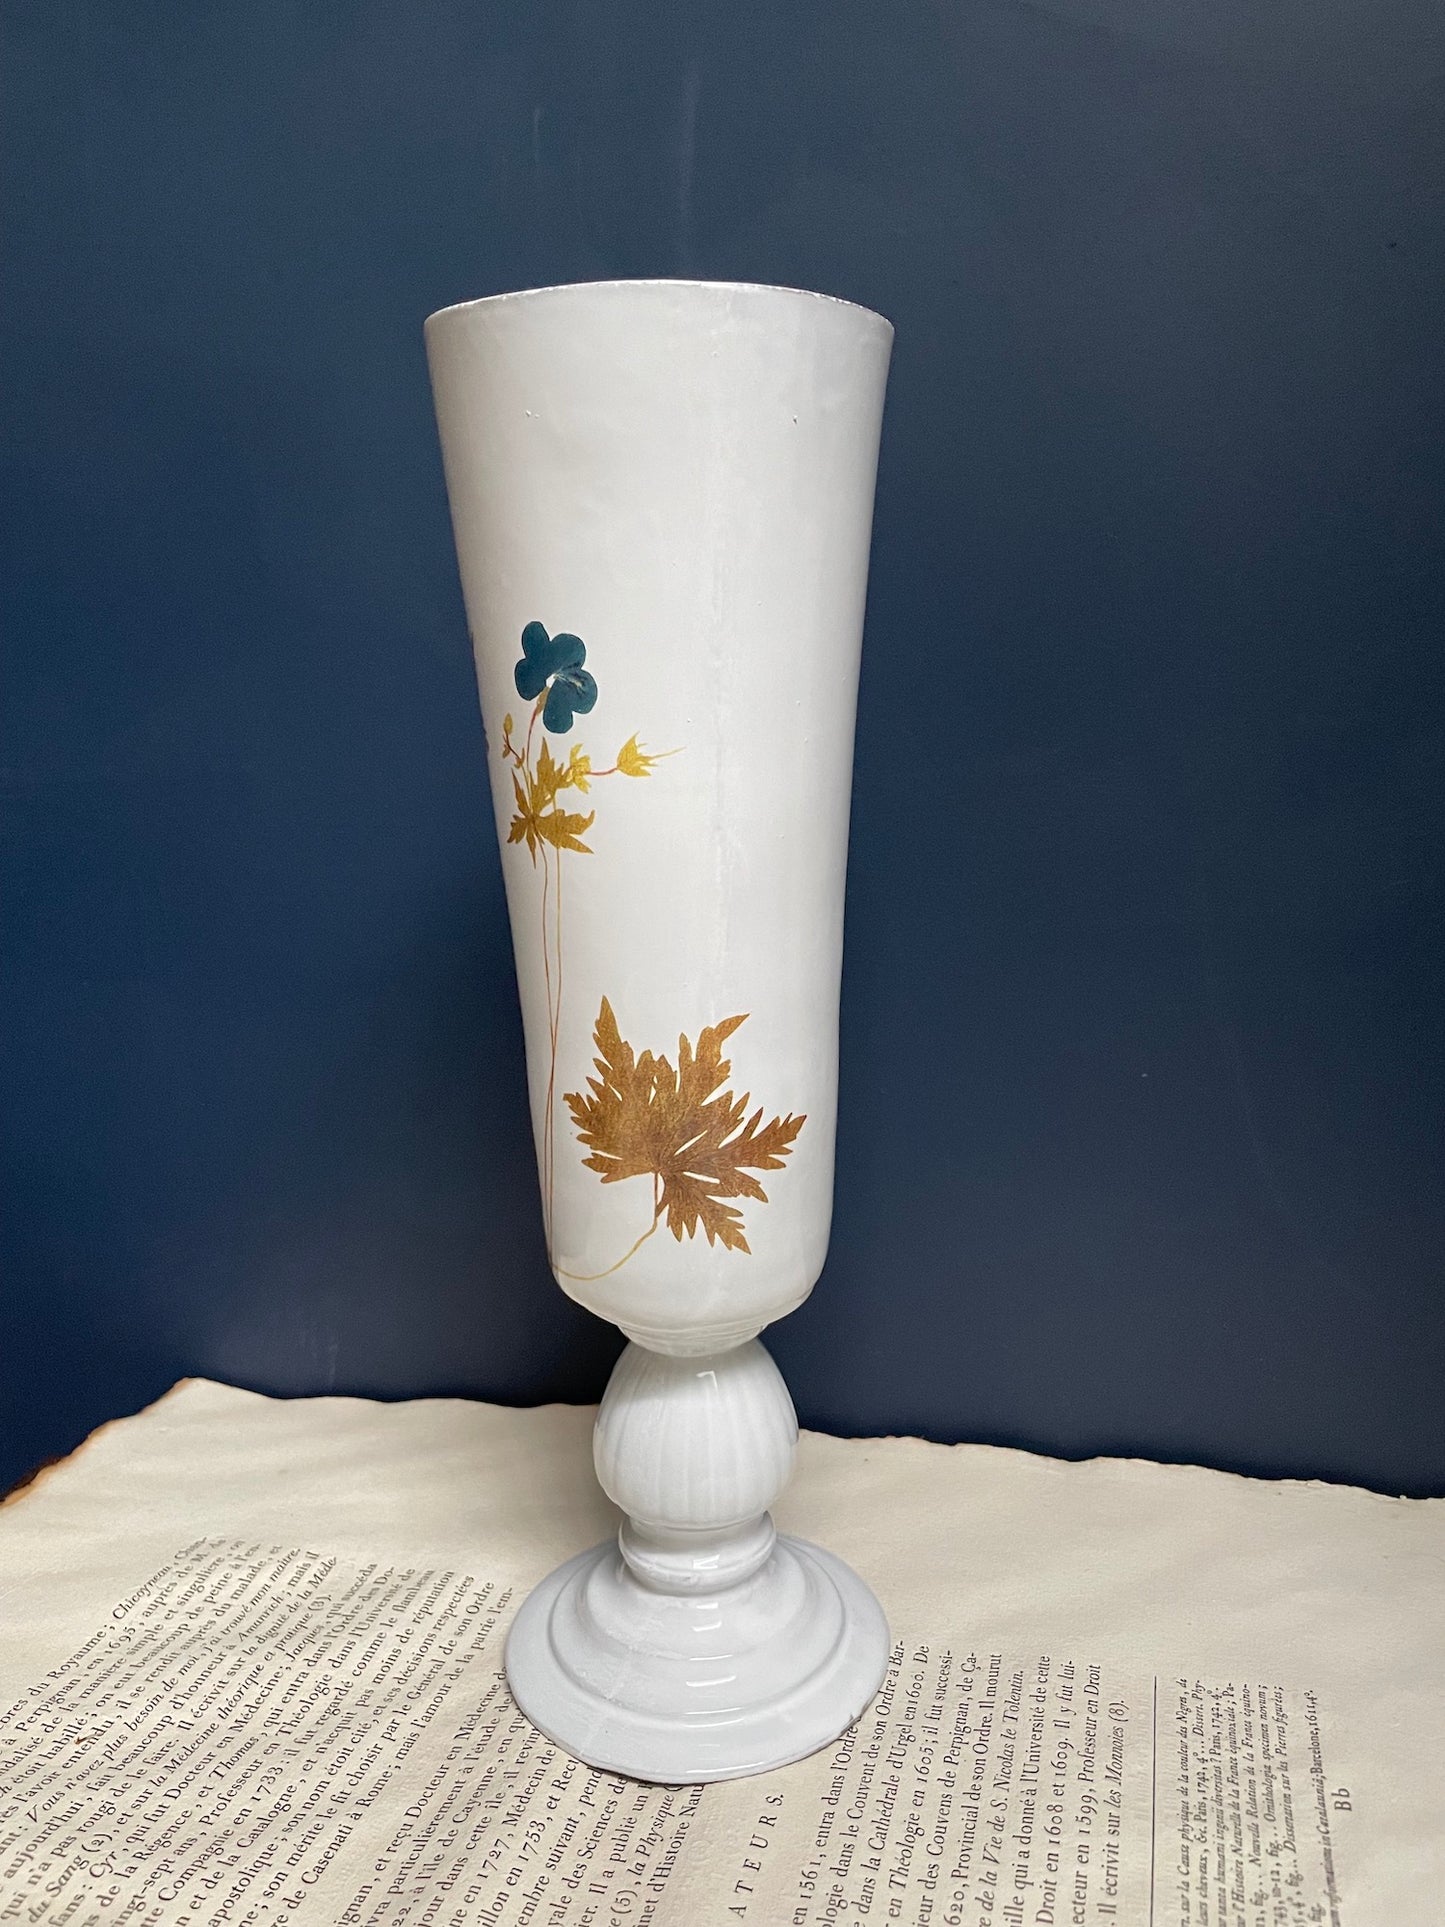 Astier de Villatte John Derian Bleu Geranium Vase